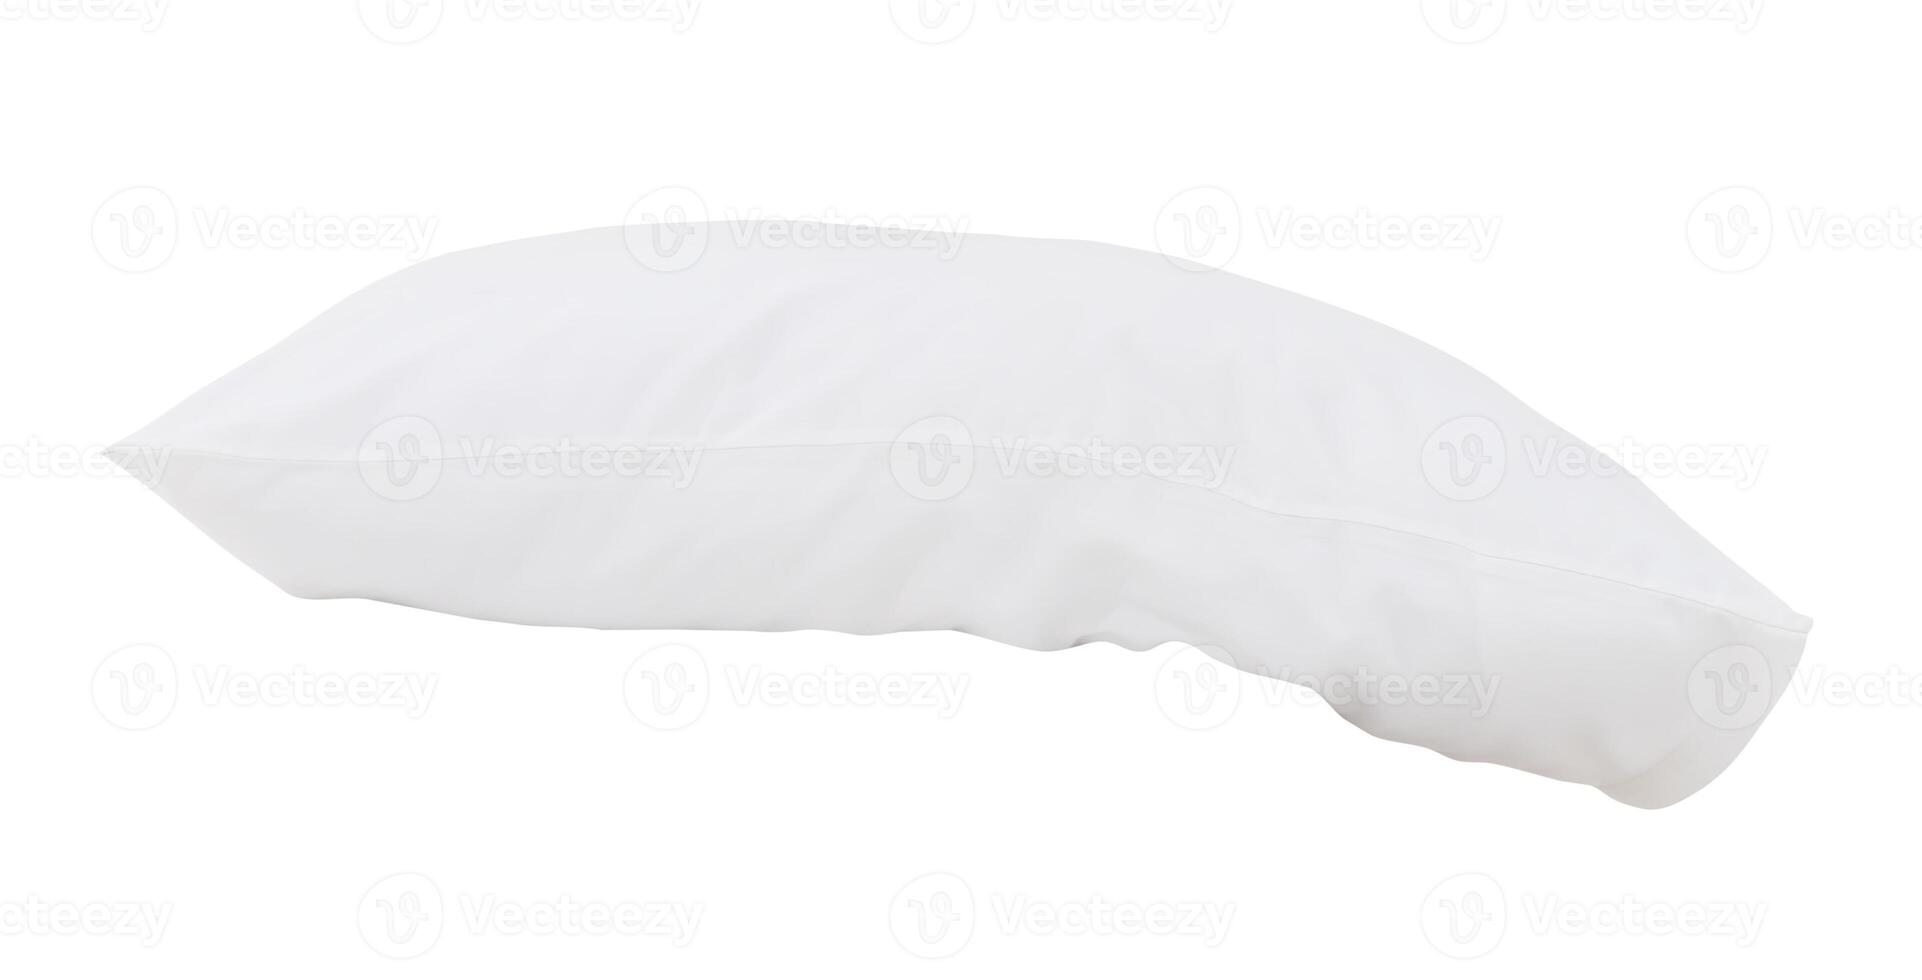 Vorderseite Aussicht von Weiß Kissen mit Fälle nach Gäste verwenden im Hotel oder Resort Zimmer isoliert auf Weiß Hintergrund mit Ausschnitt Weg. Konzept von komfortabel und glücklich Schlaf im Täglich Leben foto